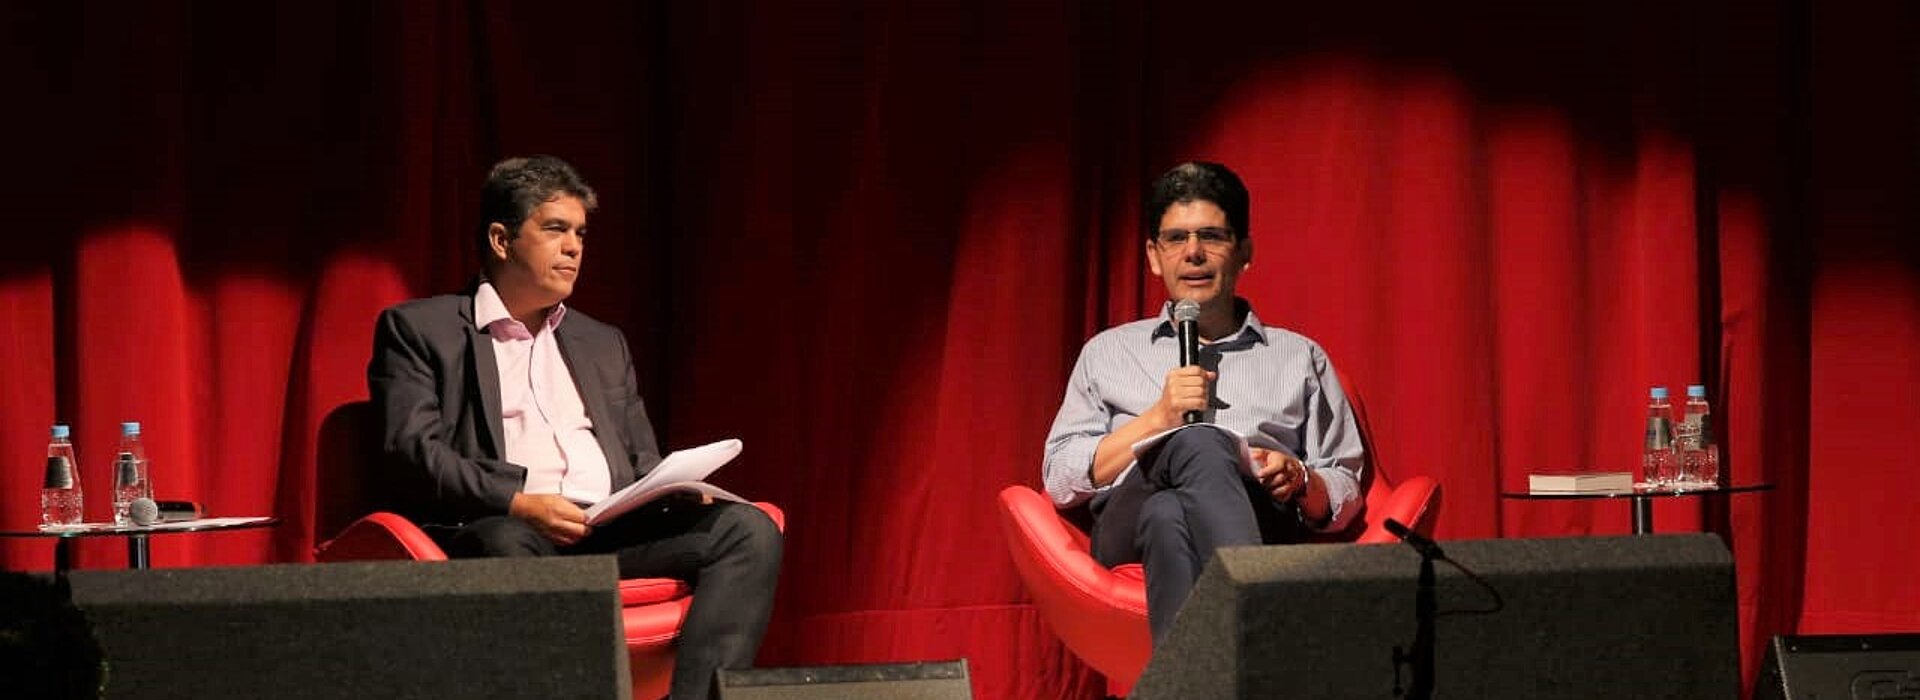 Vice-reitor e reverendo sentados com microfones em mãos durante apresentação, ao fundo, uma cortina vermelha.